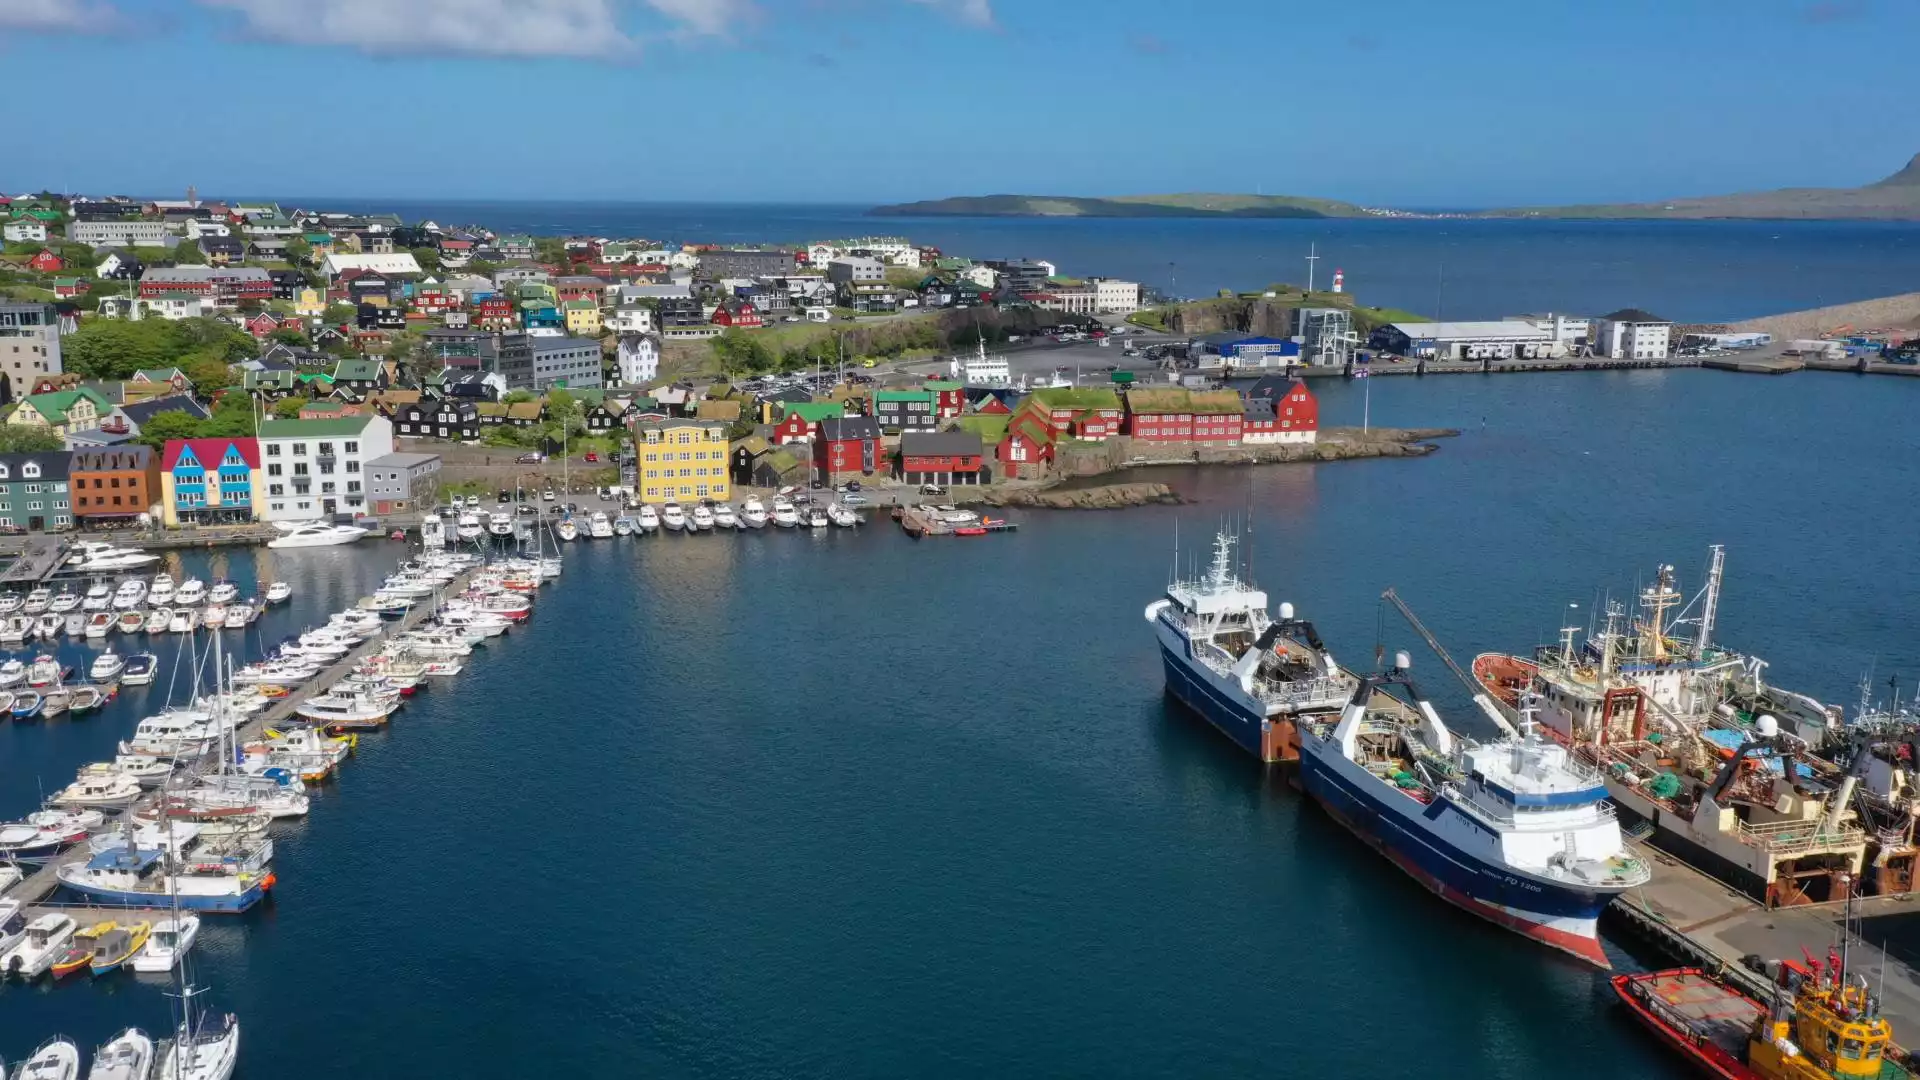 De hoofdstad van de Faeröer Eilanden ontdekken